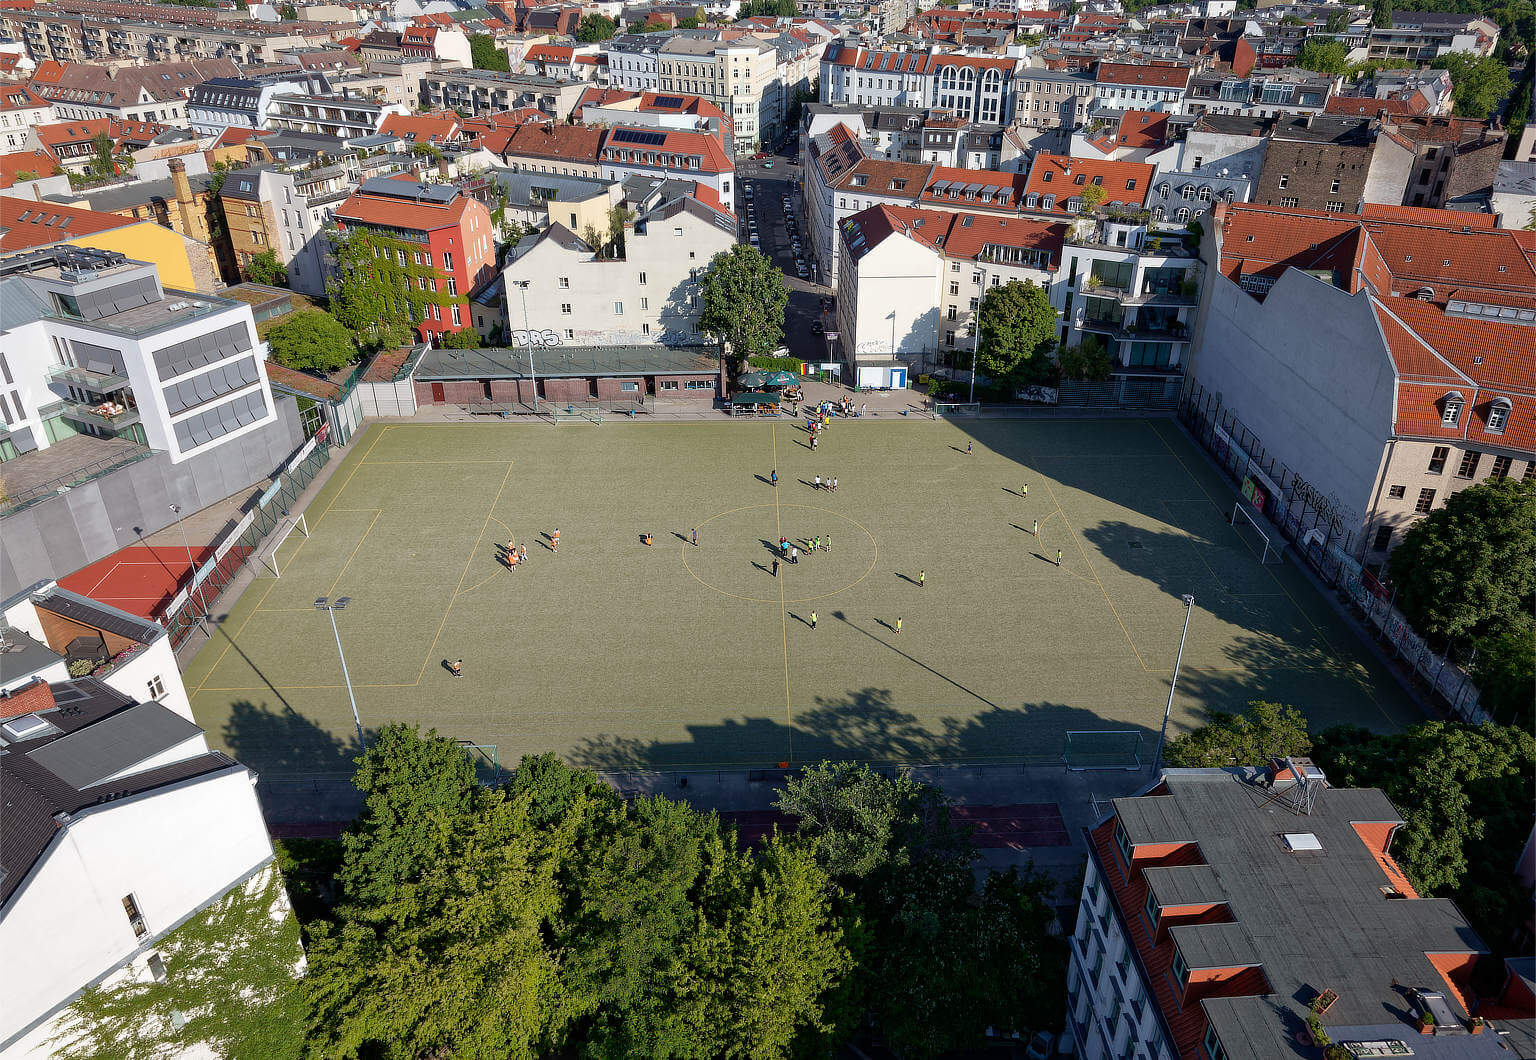 Luftbild Fußballplatz zwischen Häusern